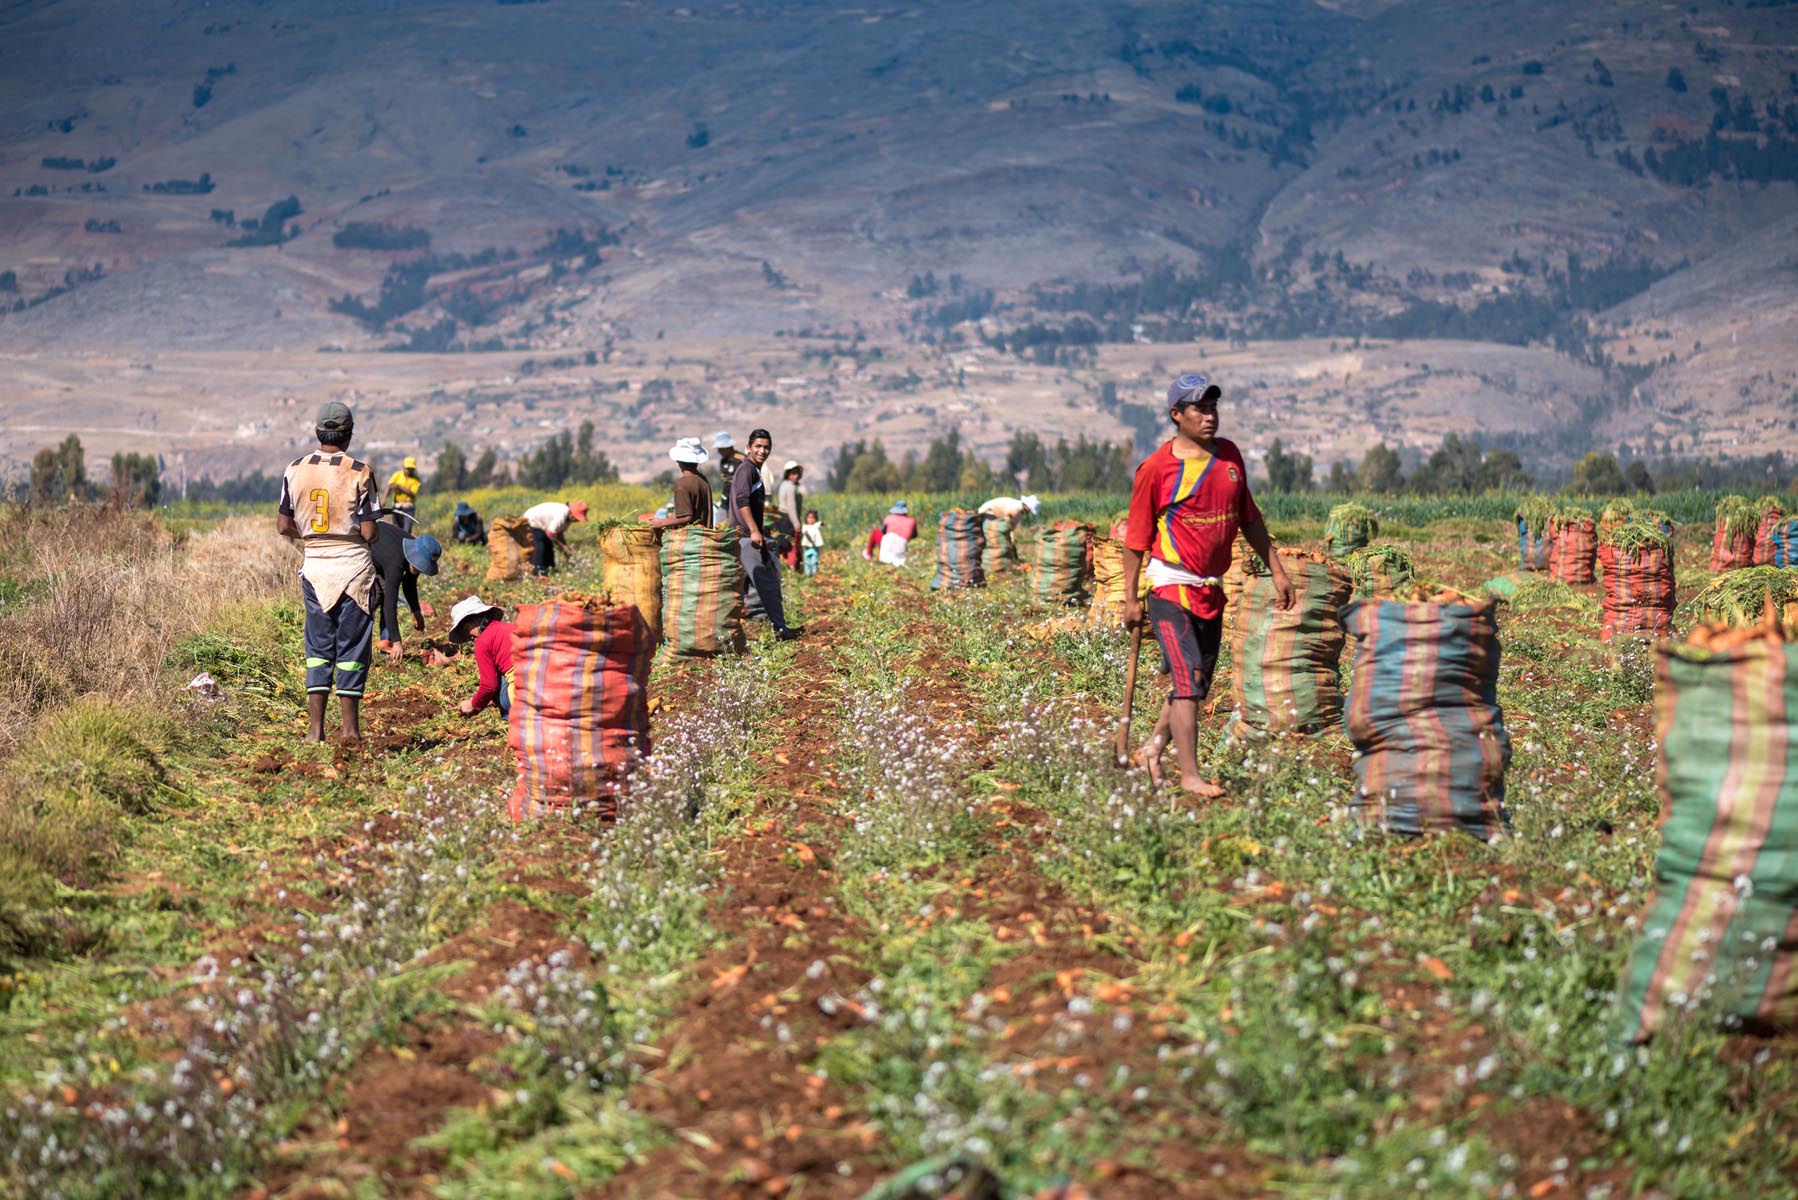 Men group in a farm circa 2017, in Huancayo, Peru.